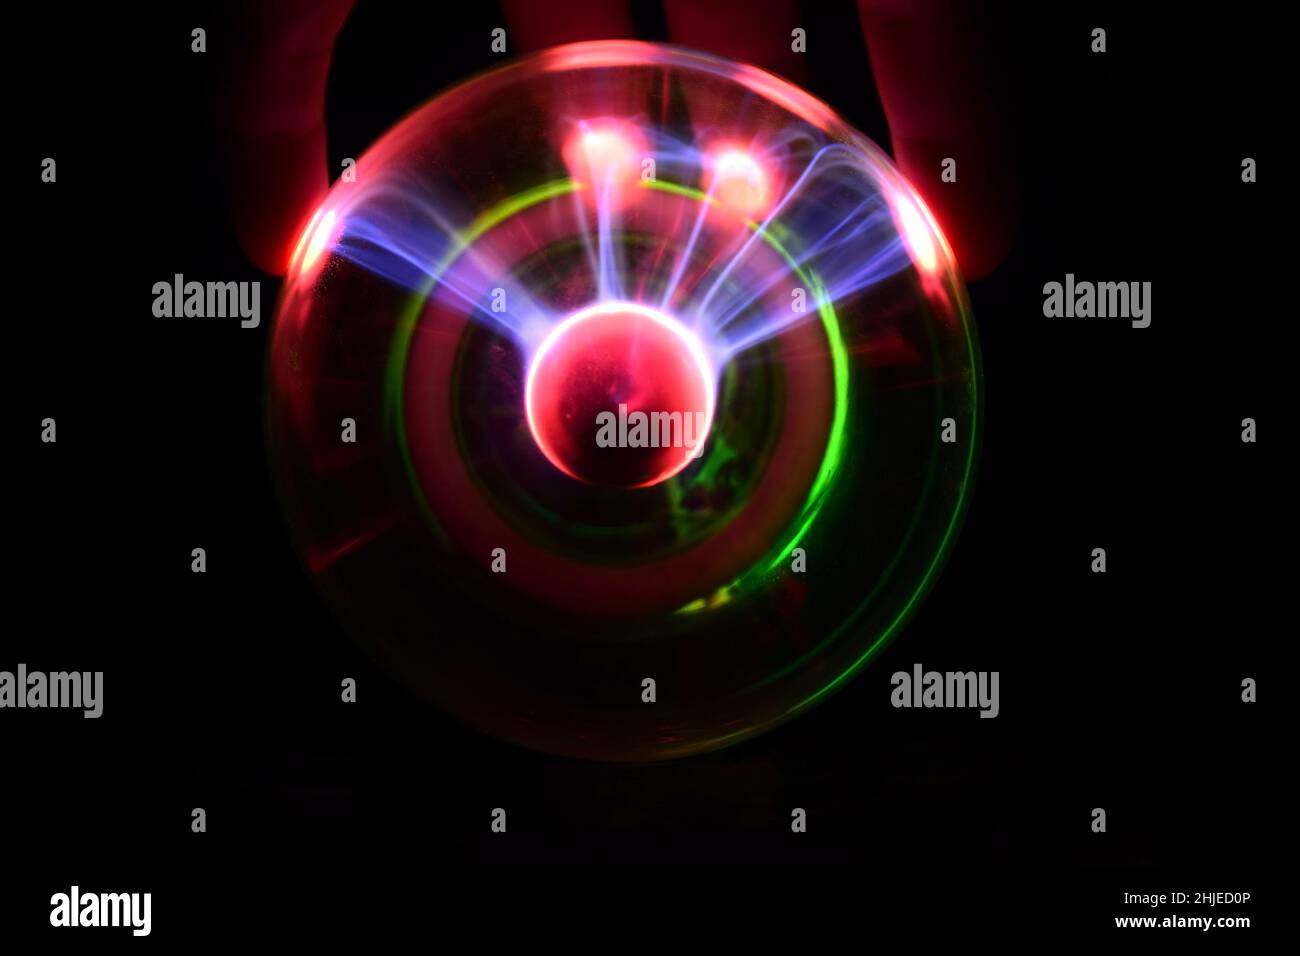 Boule de plasma avec des éclairs irisés dans différentes couleurs sur un fond très sombre Banque D'Images